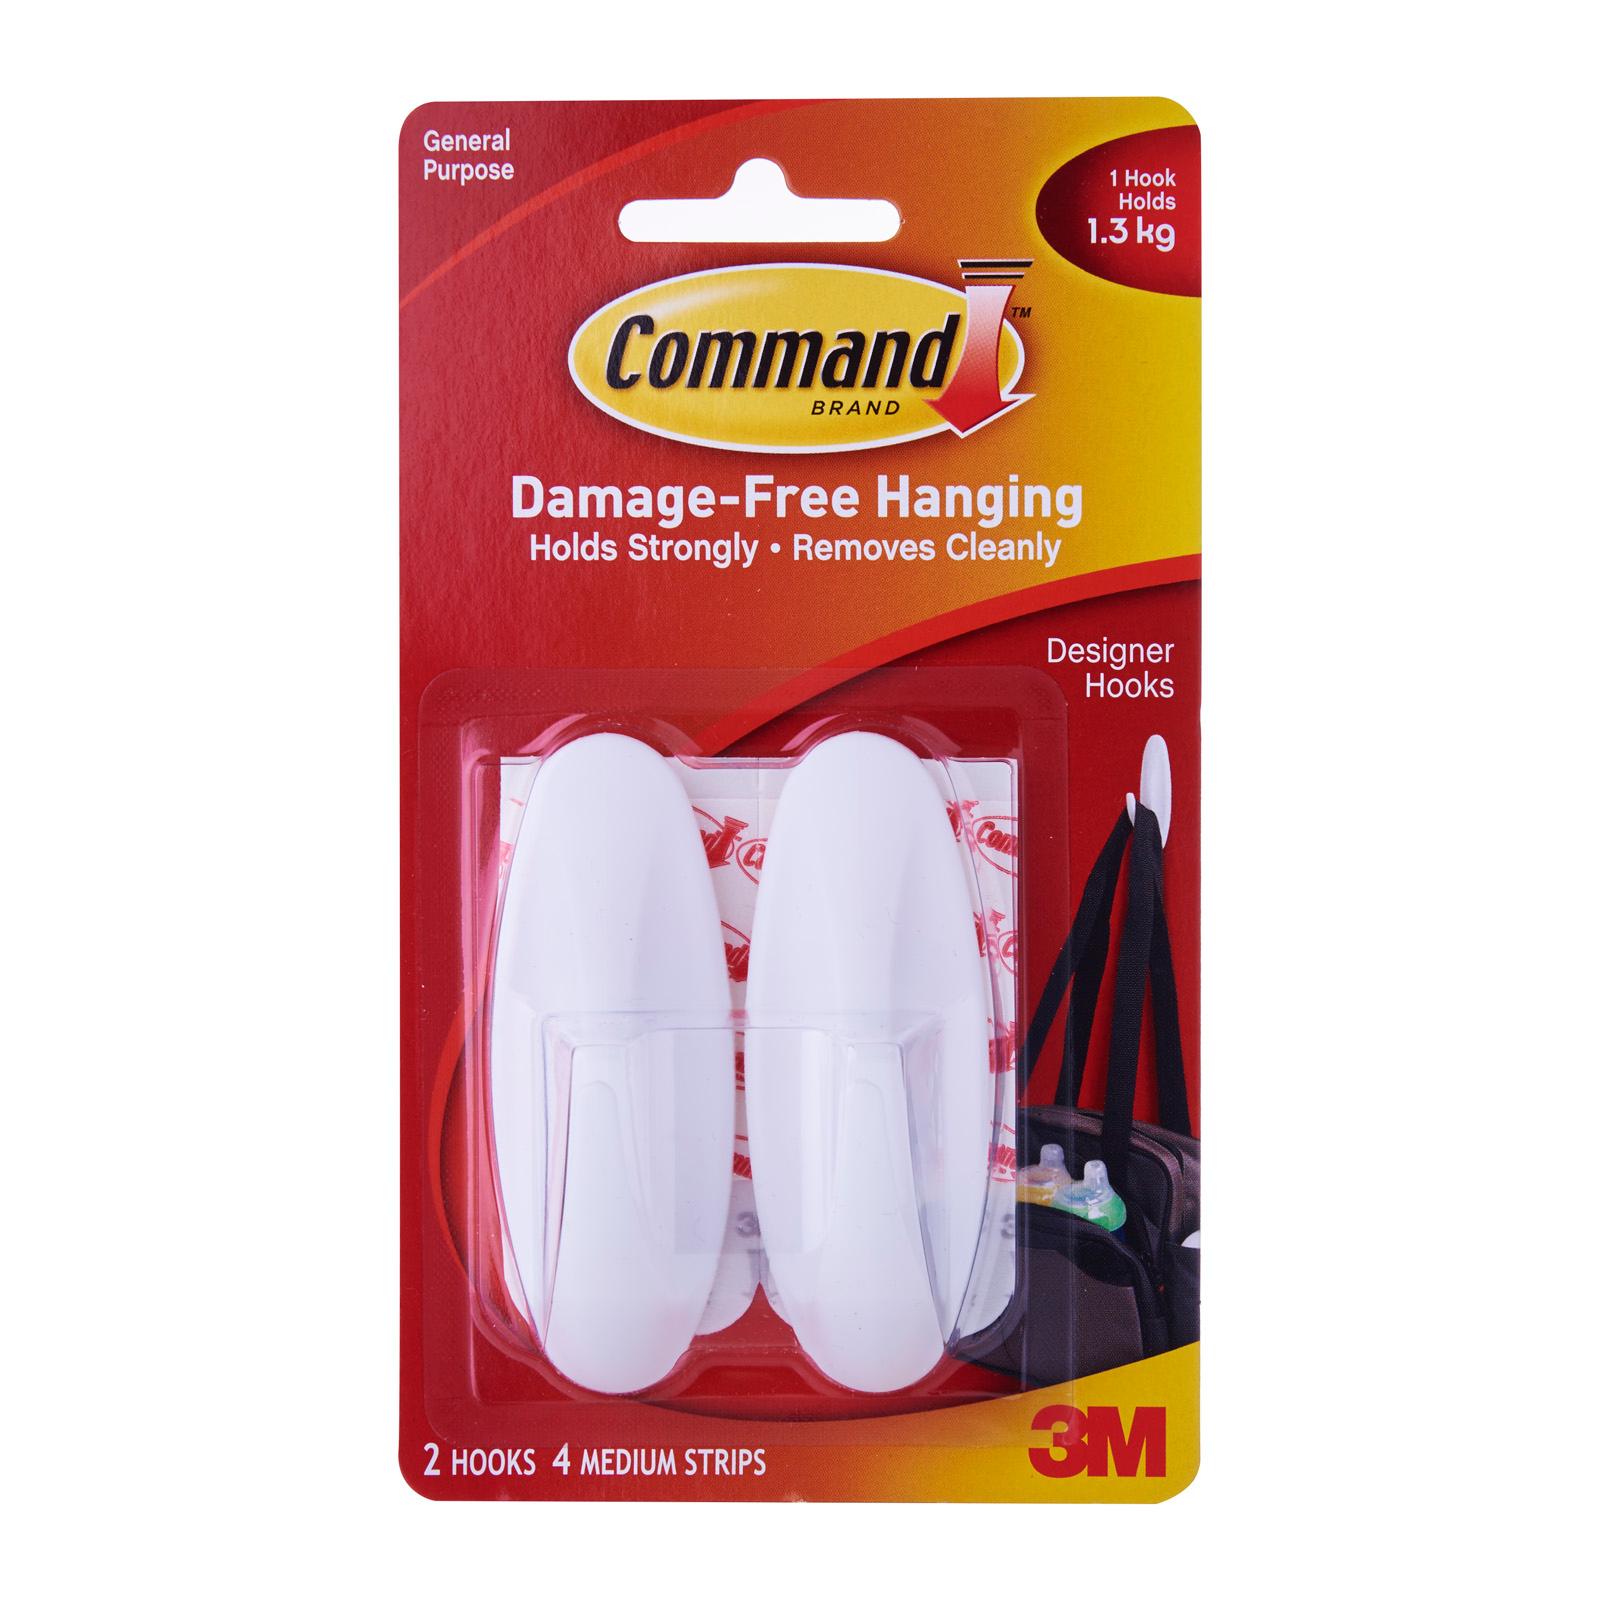 Damage free hanging hooks